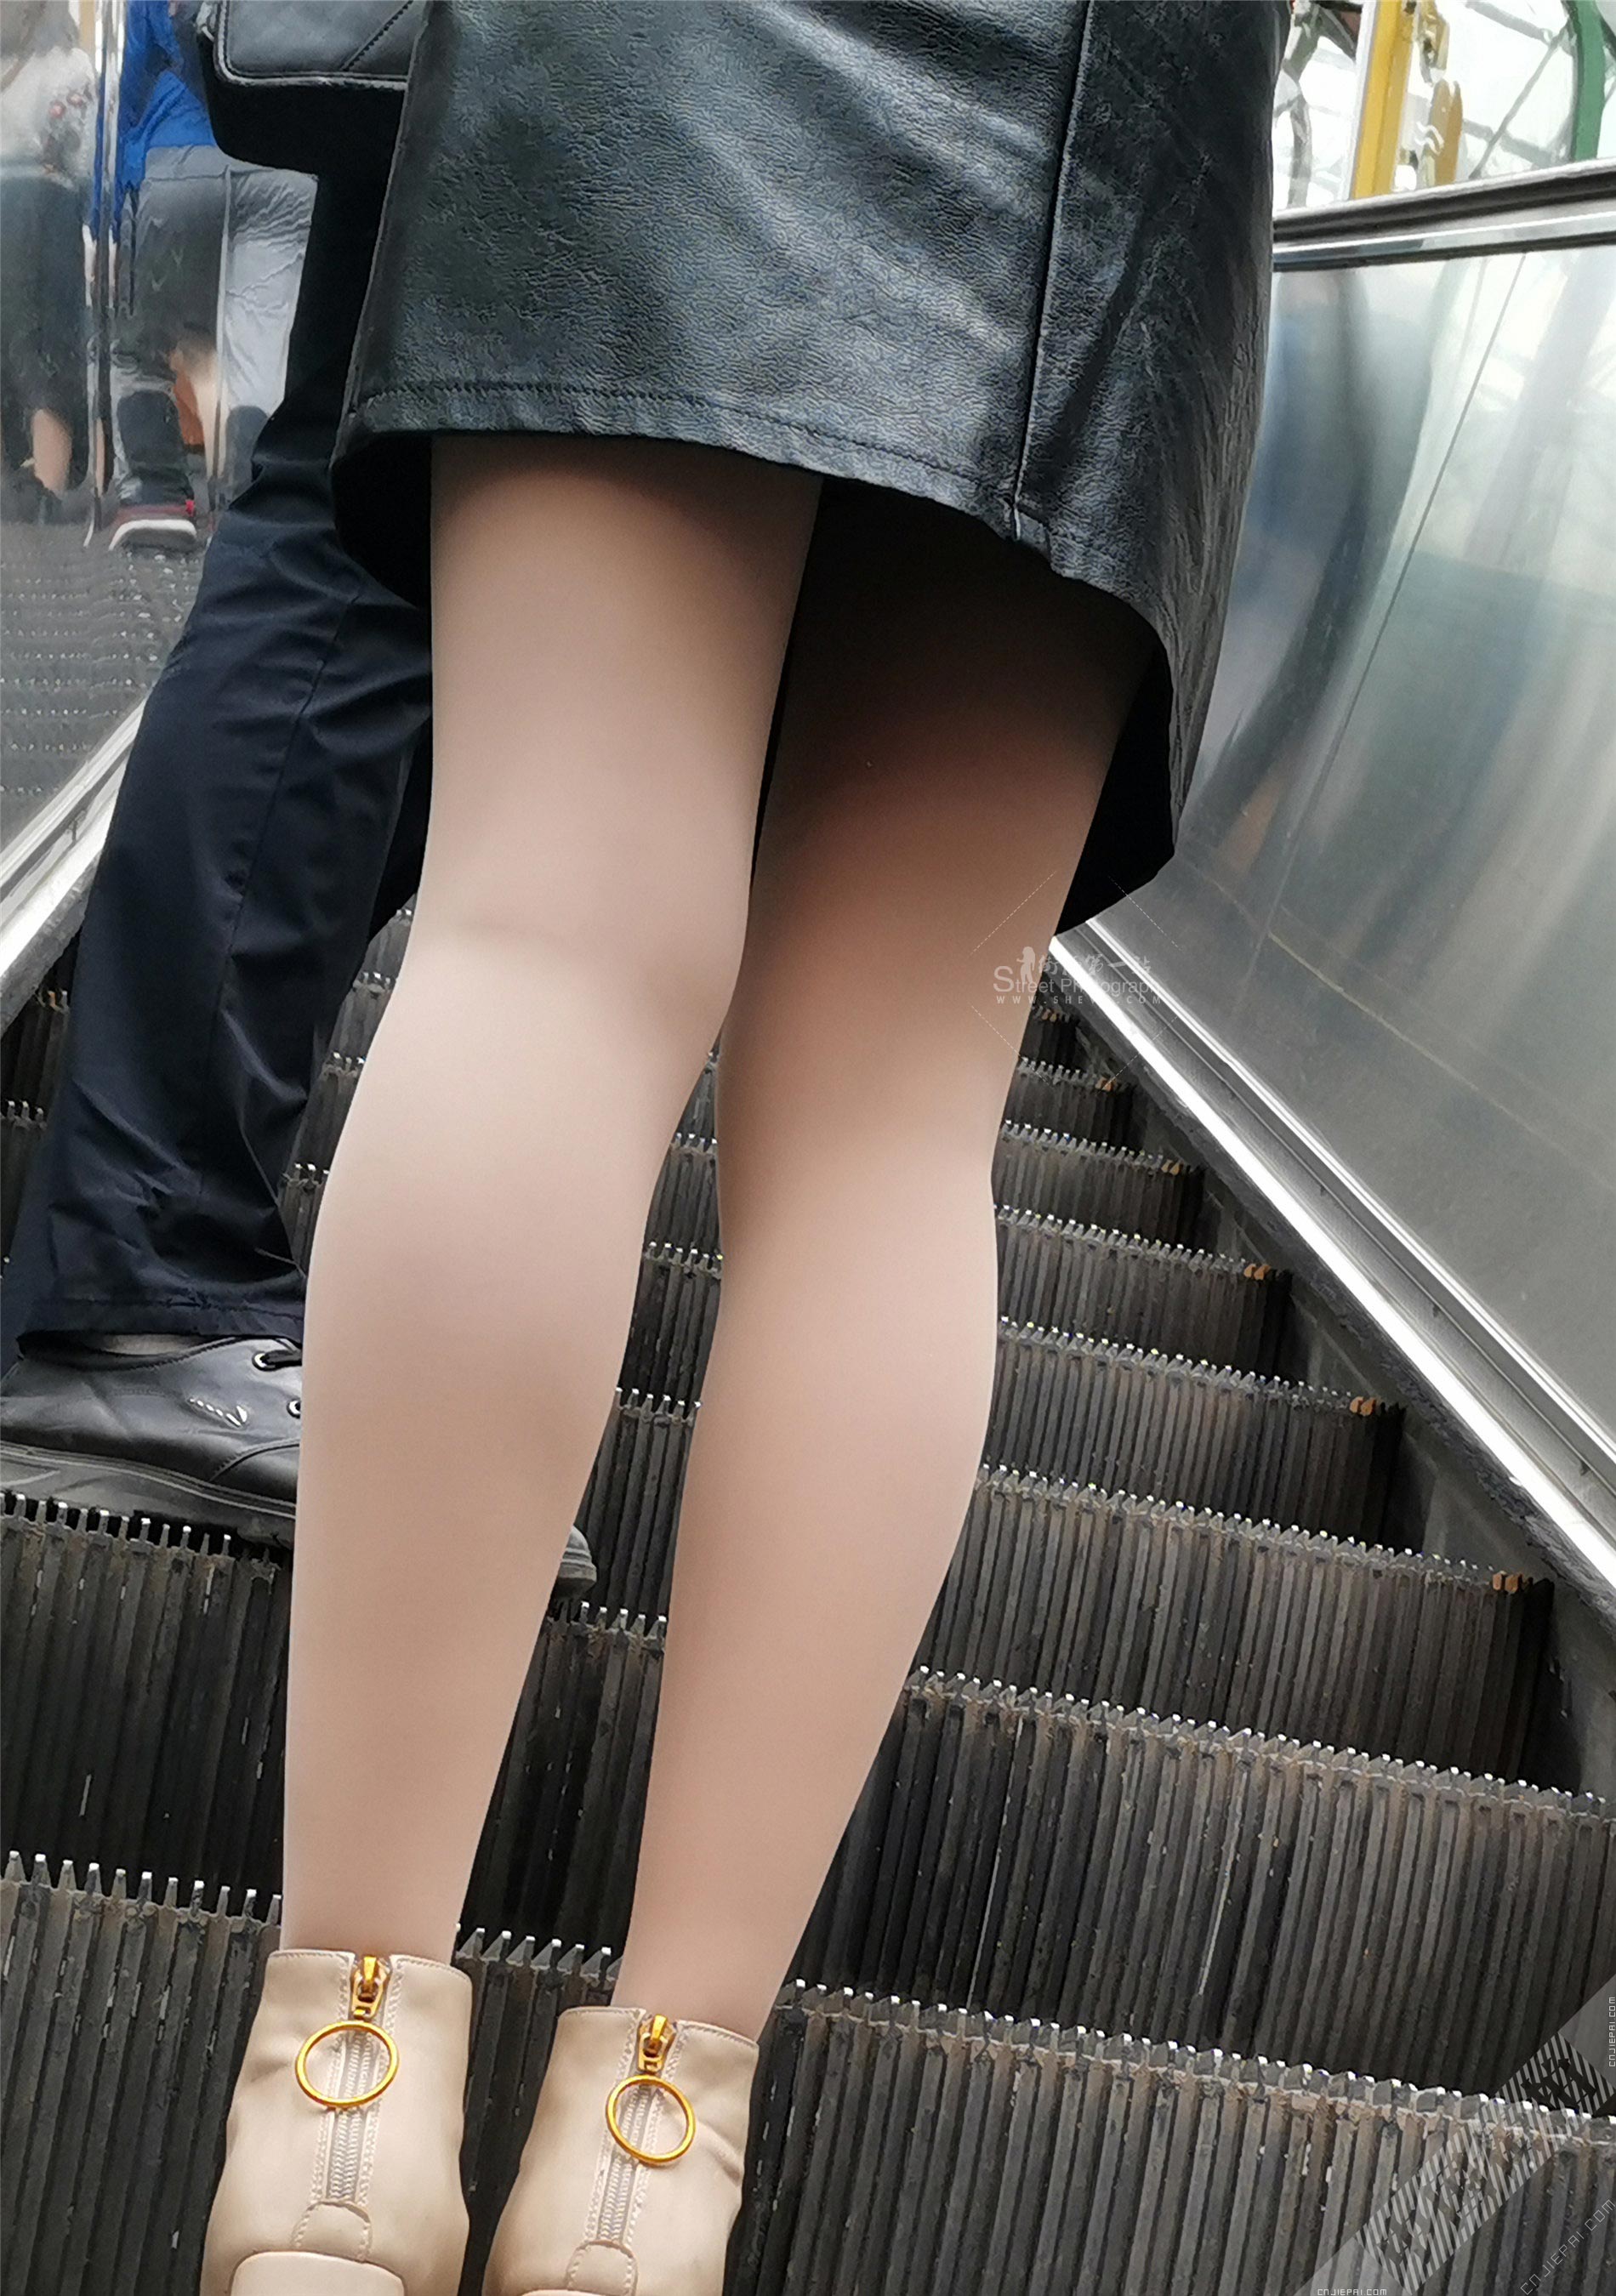 抓拍电梯上厚肉丝少妇光滑的双腿 图7